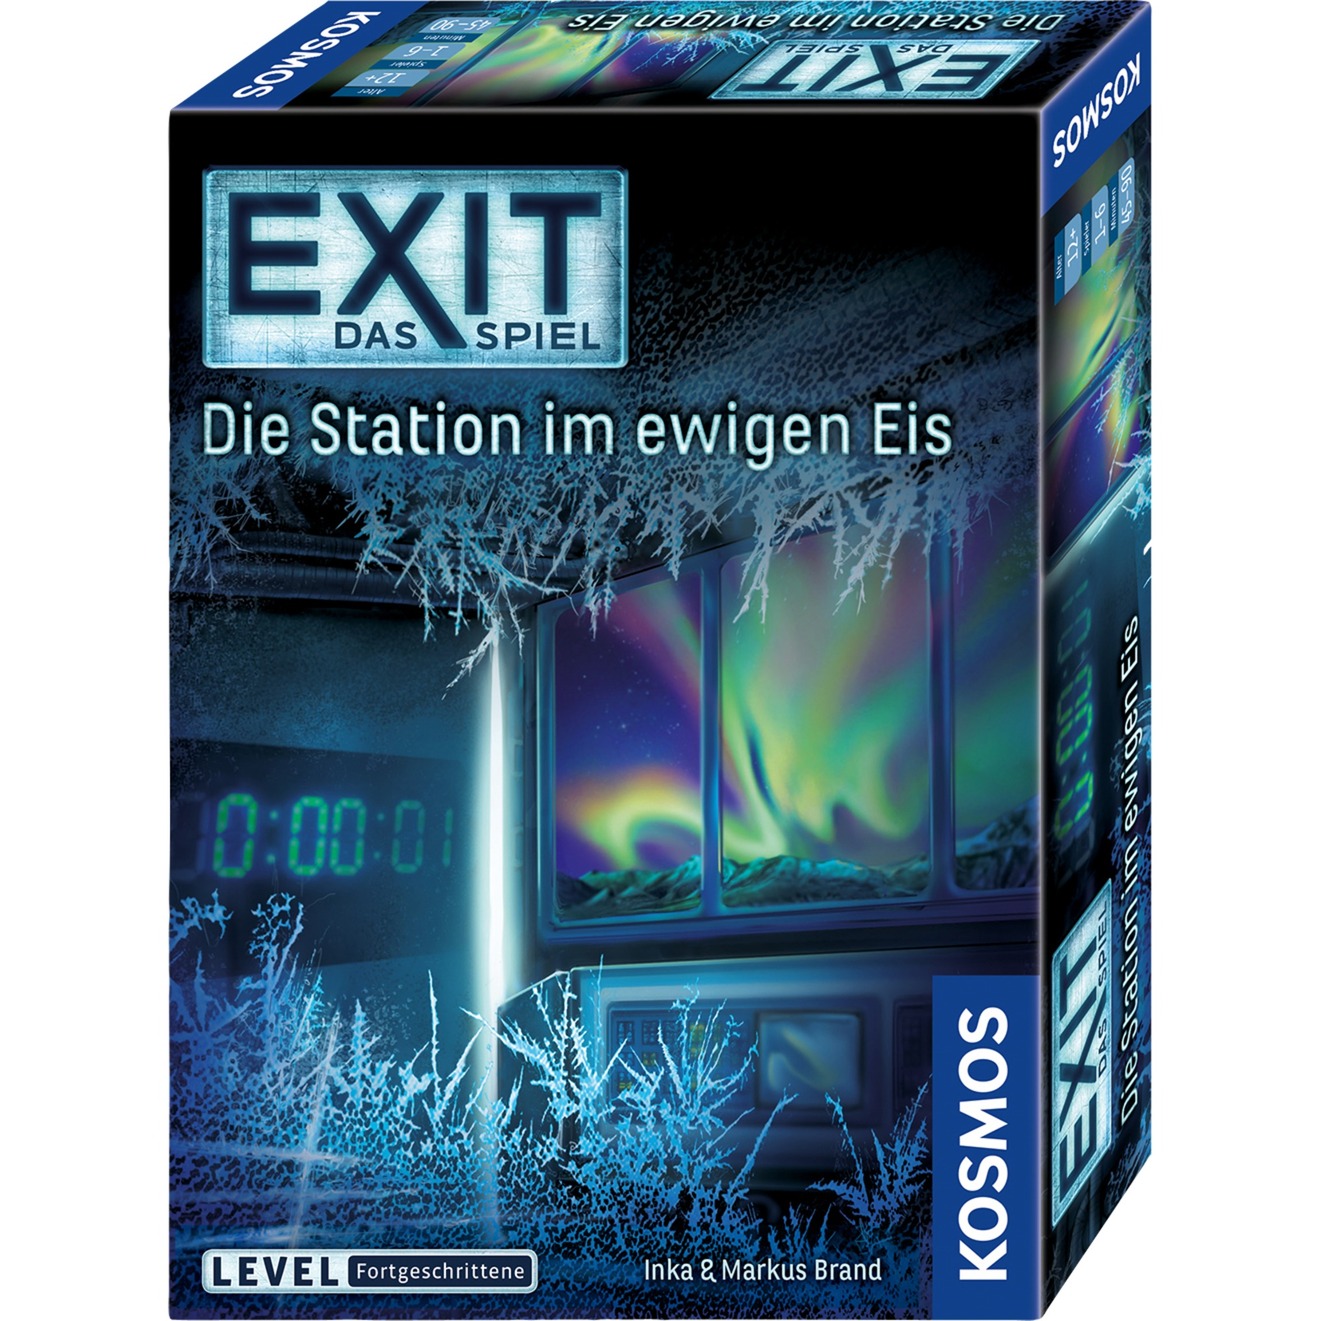 Image of Alternate - EXIT - Das Spiel - Die Station im ewigen Eis, Partyspiel online einkaufen bei Alternate